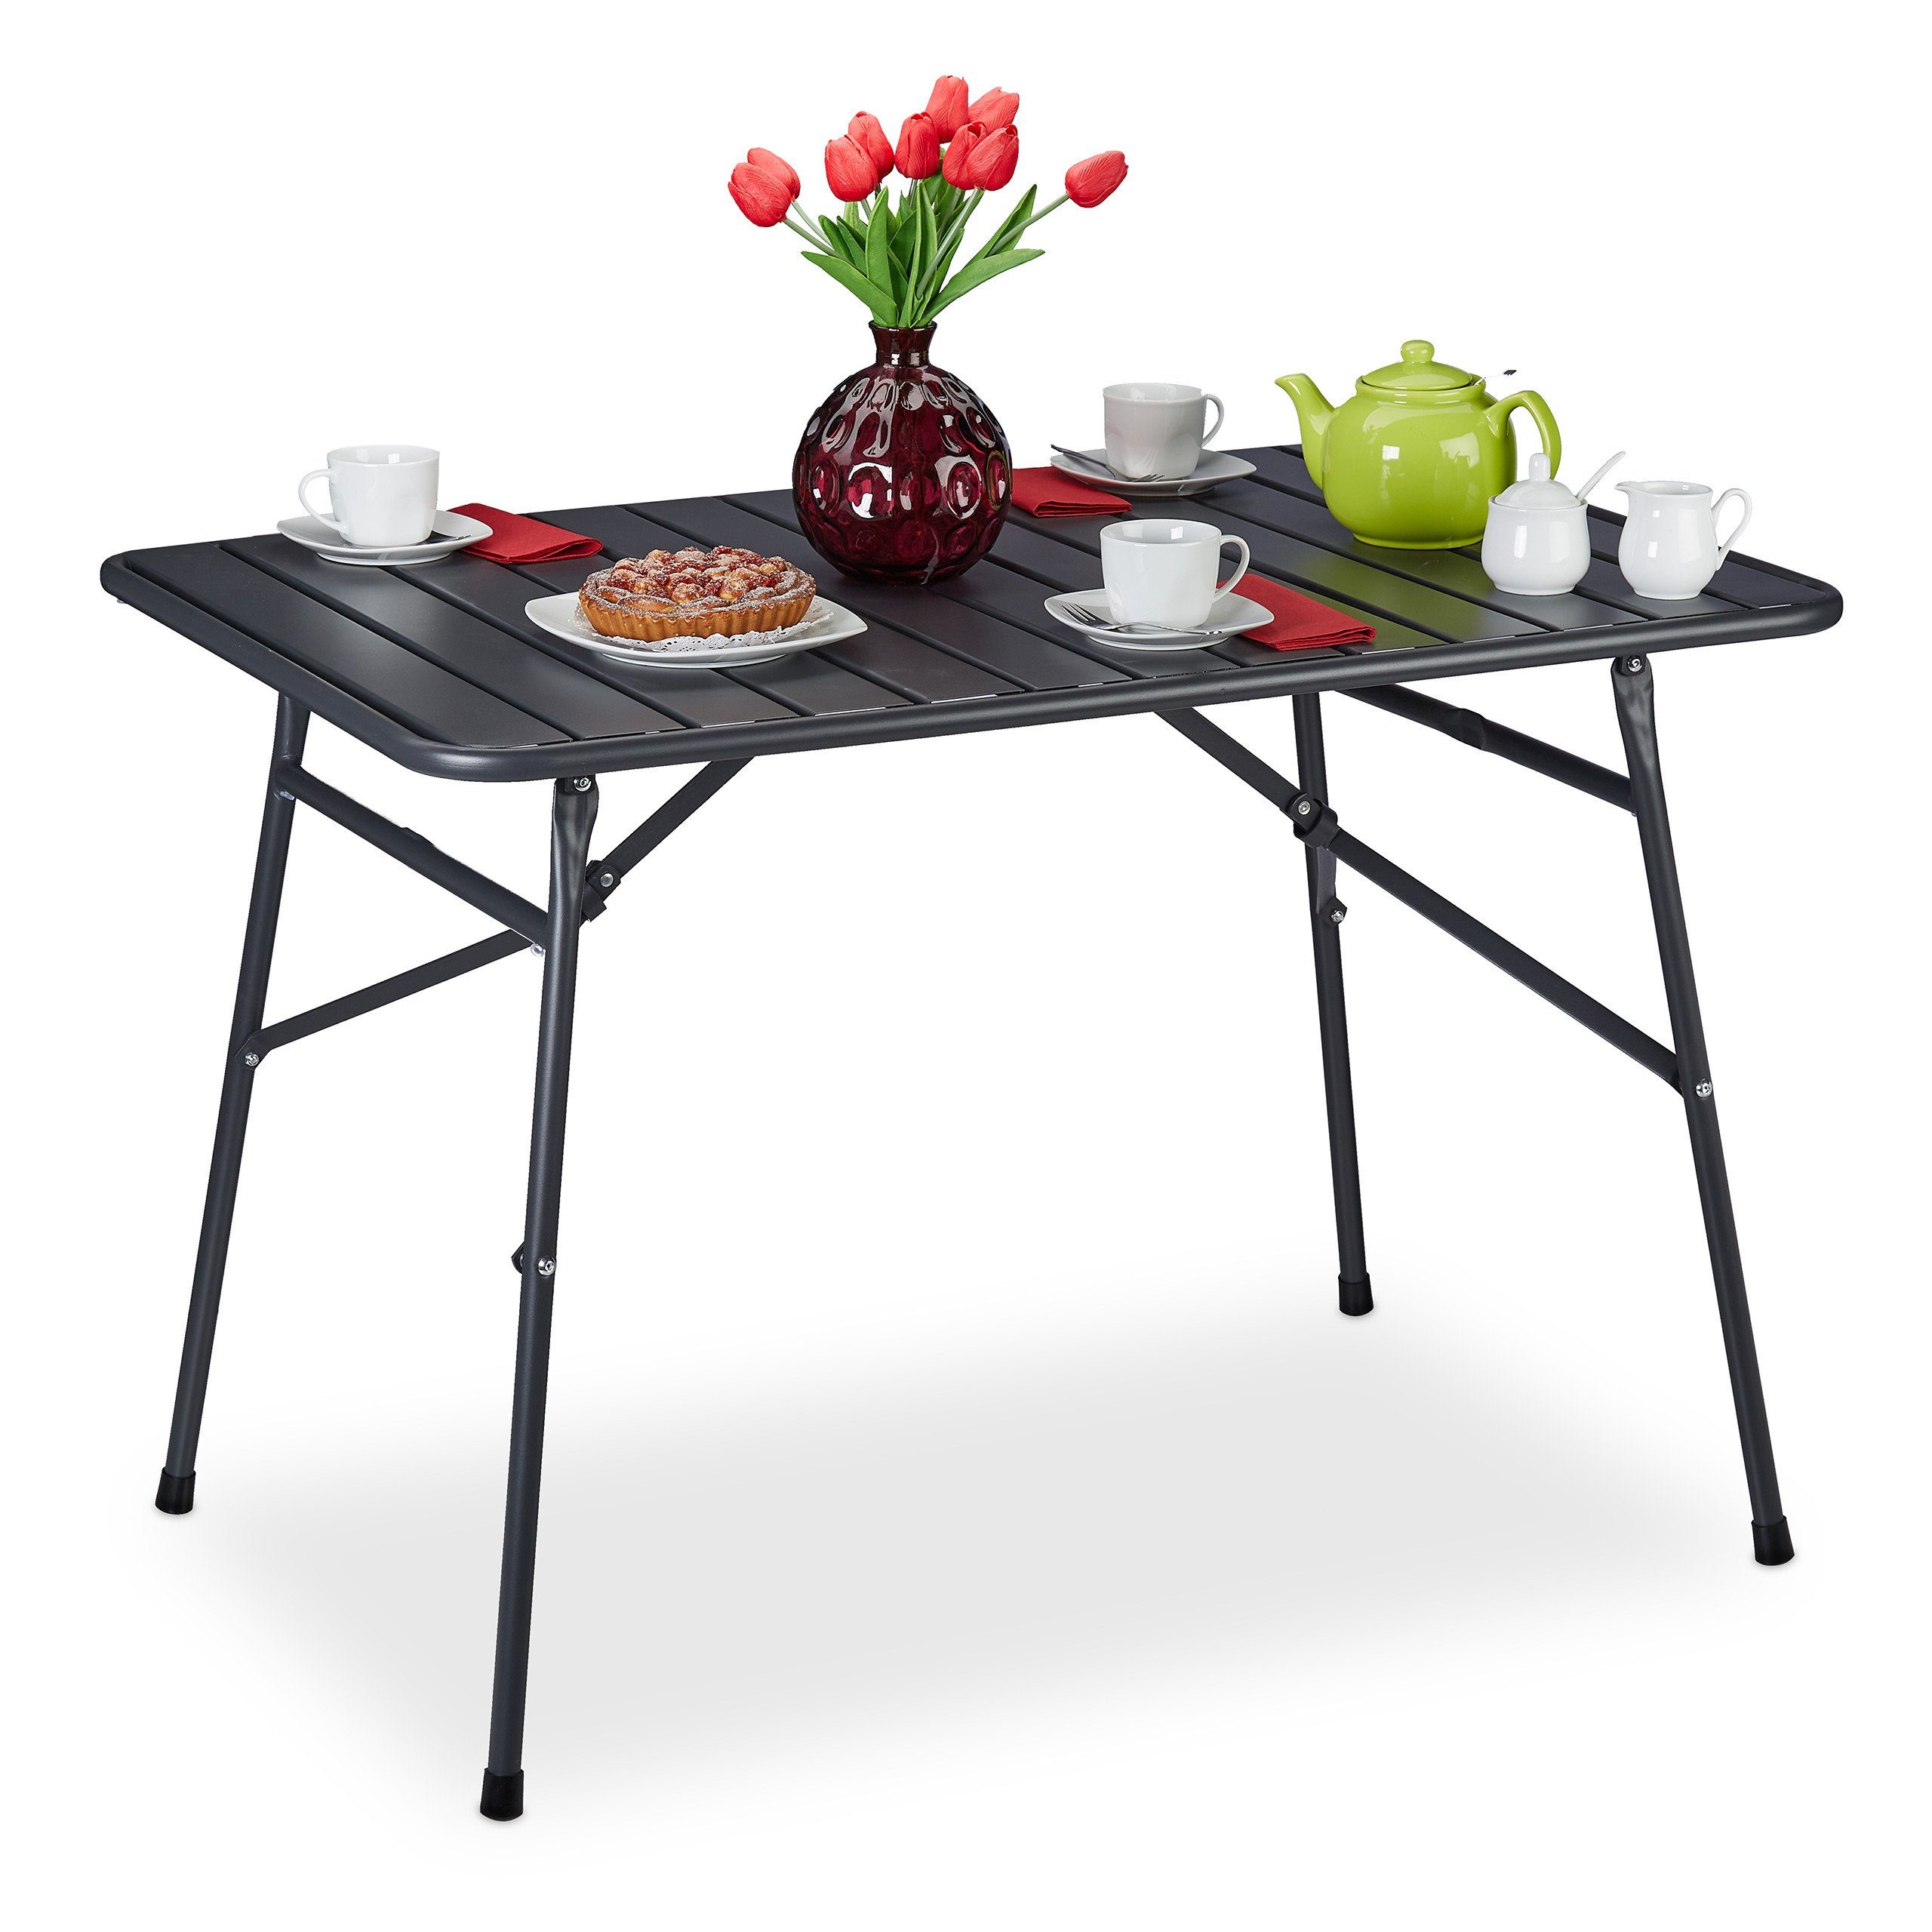 relaxdays Gartentisch »Gartentisch klappbar Metall« online kaufen | OTTO